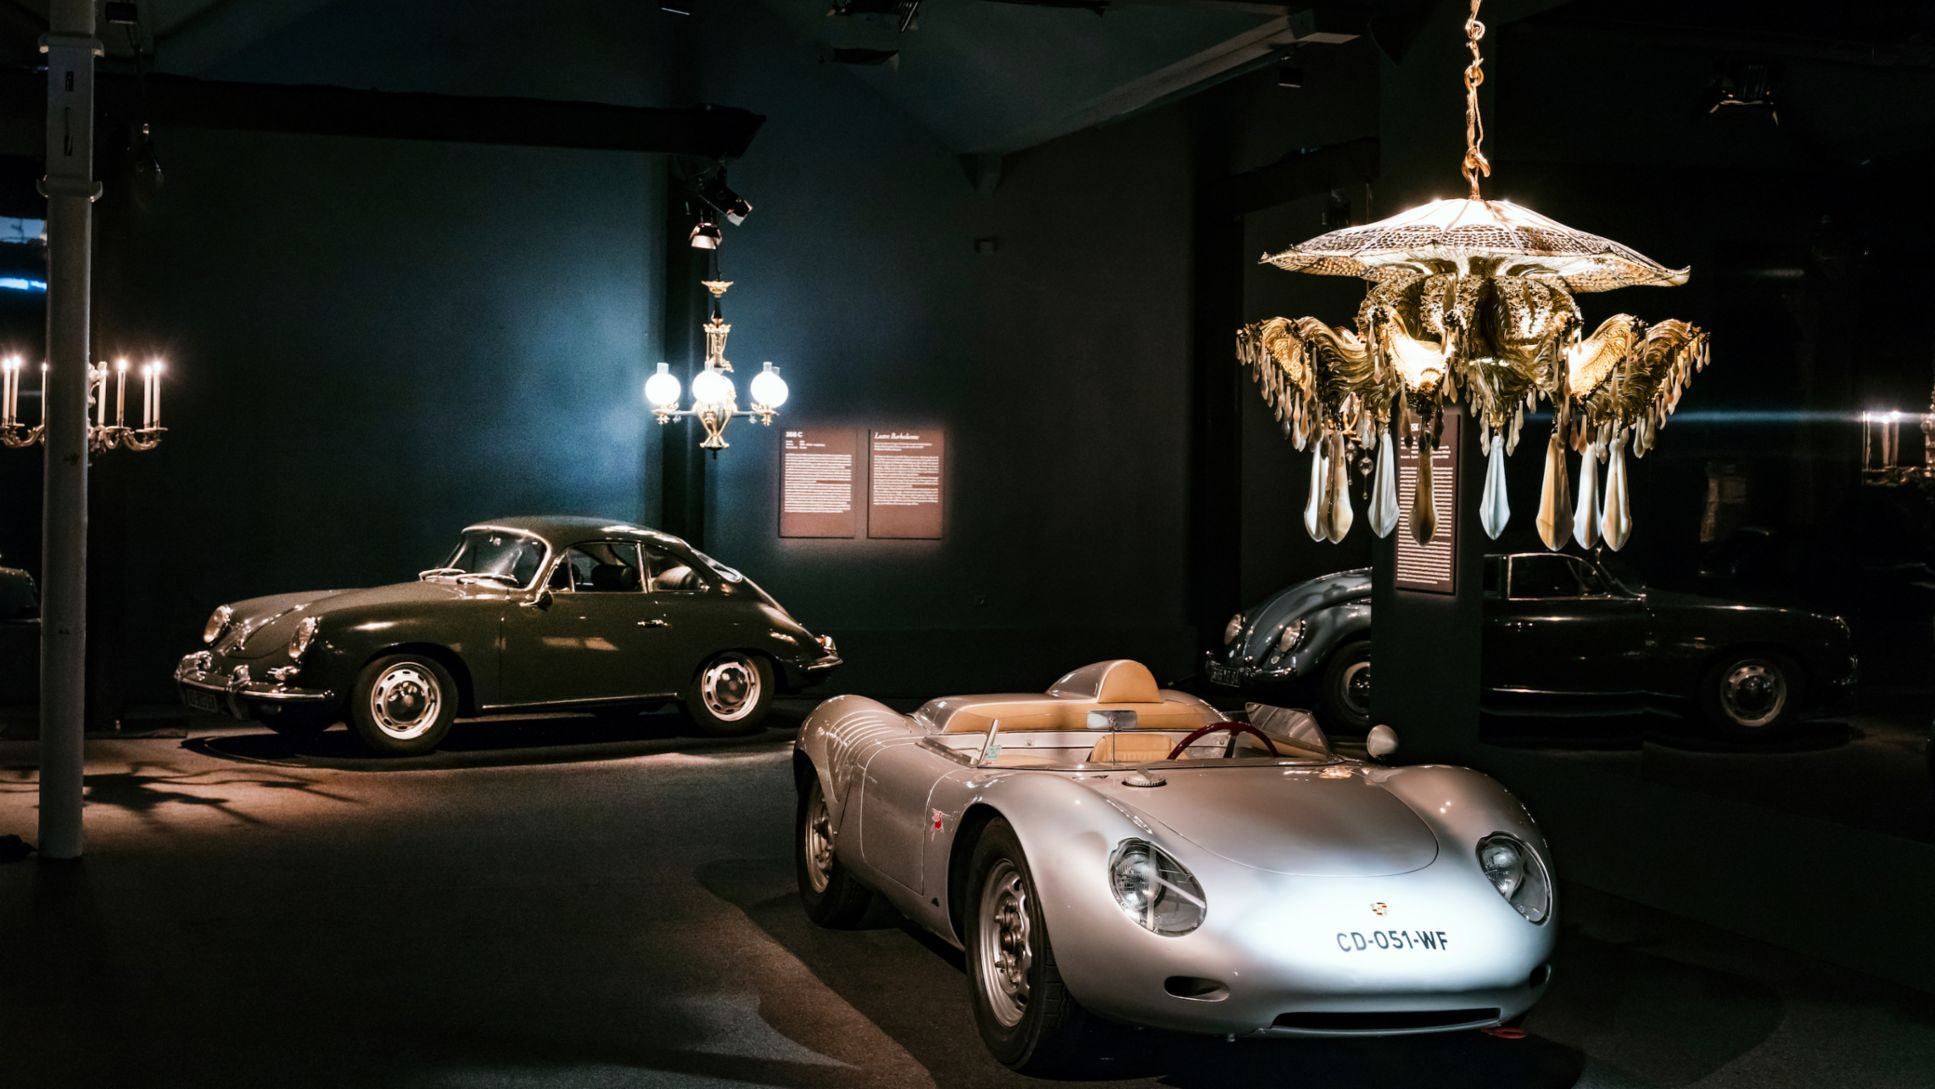 Exposición "Porsche: obras de arte de la colección de Régis Mathieu". Museo del automóvil de la Cité de l'Automobile, Mulhouse, Francia, 2018, Porsche AG